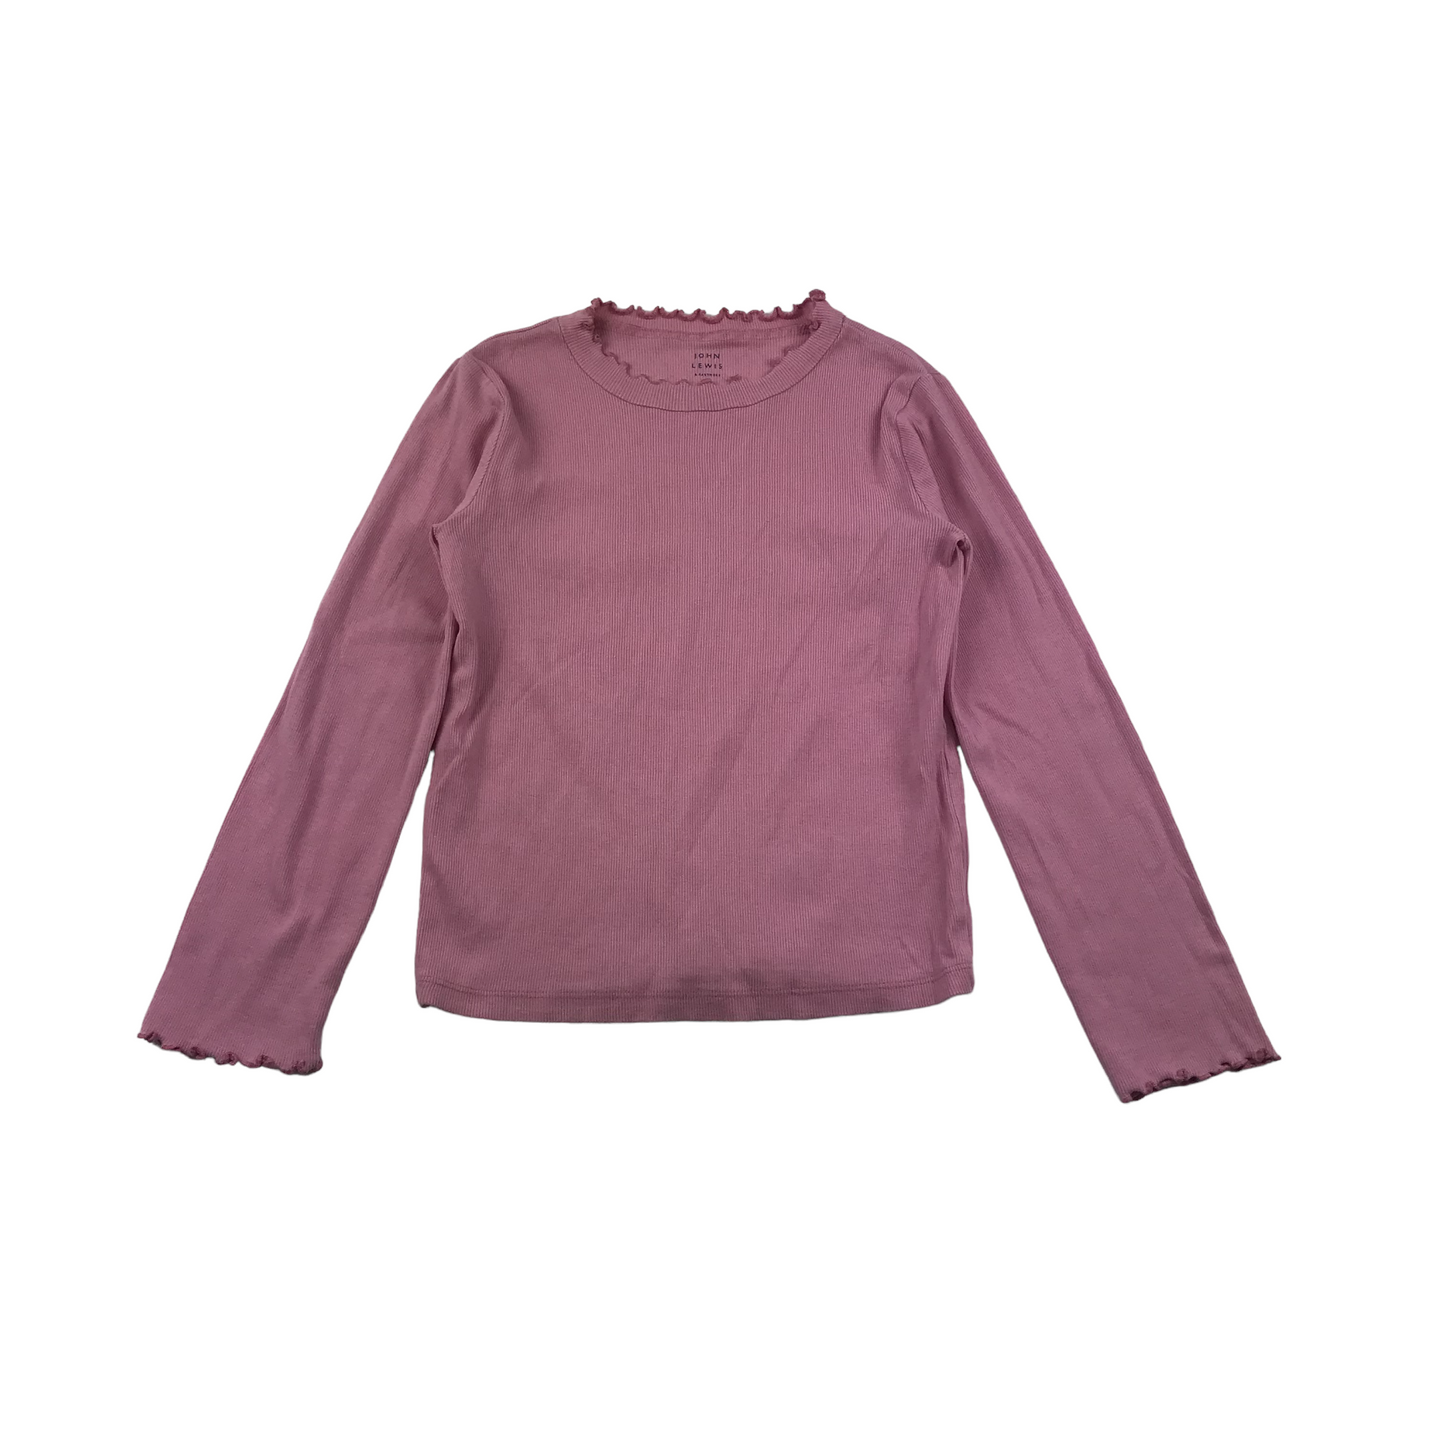 John Lewis Teal and Pink T-shirt Set Age 8